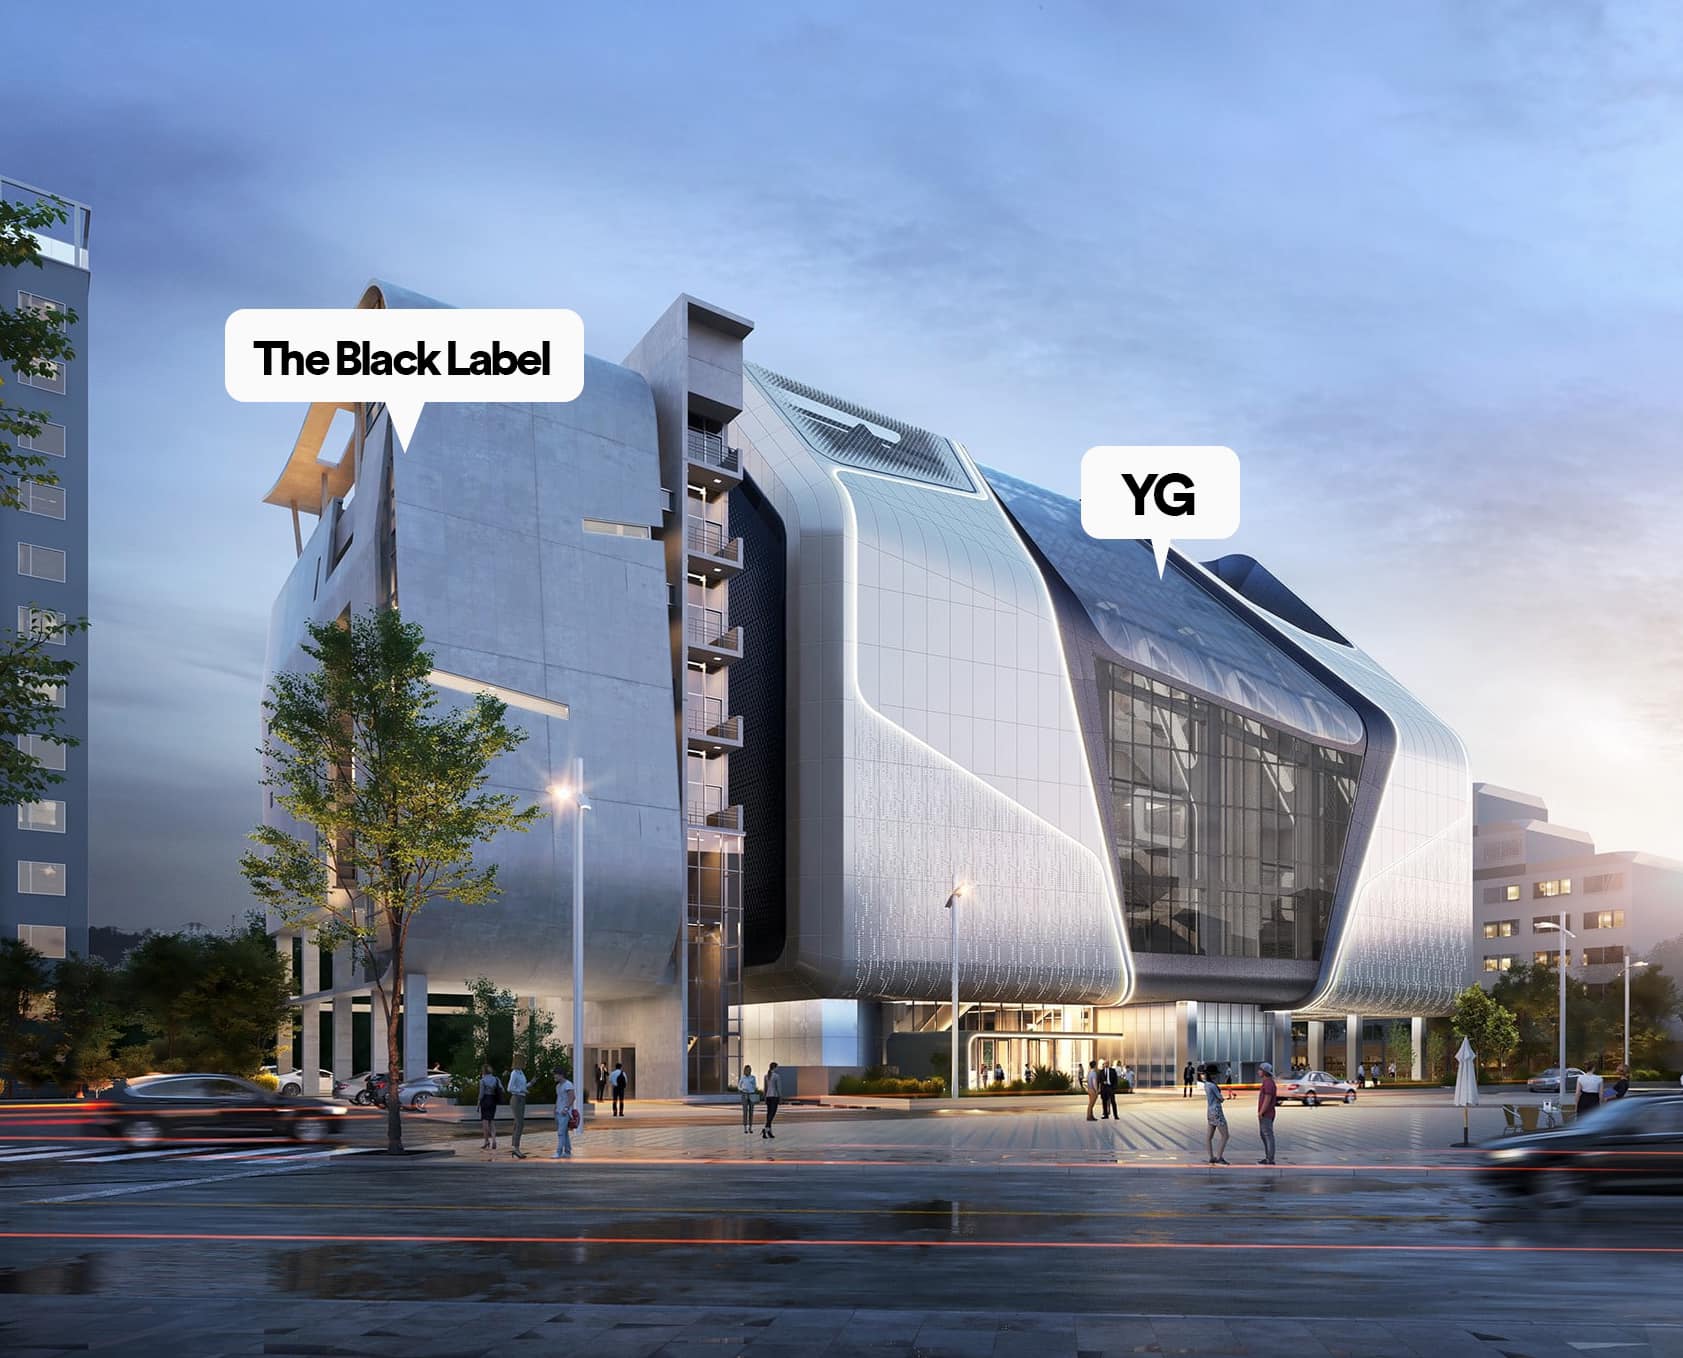 Hình ảnh 2 tòa nhà trụ sở YG Entertainment (bên phải) và The Black Label (bên trái) (Nguồn FB: YG FAMILY'S LOVER )